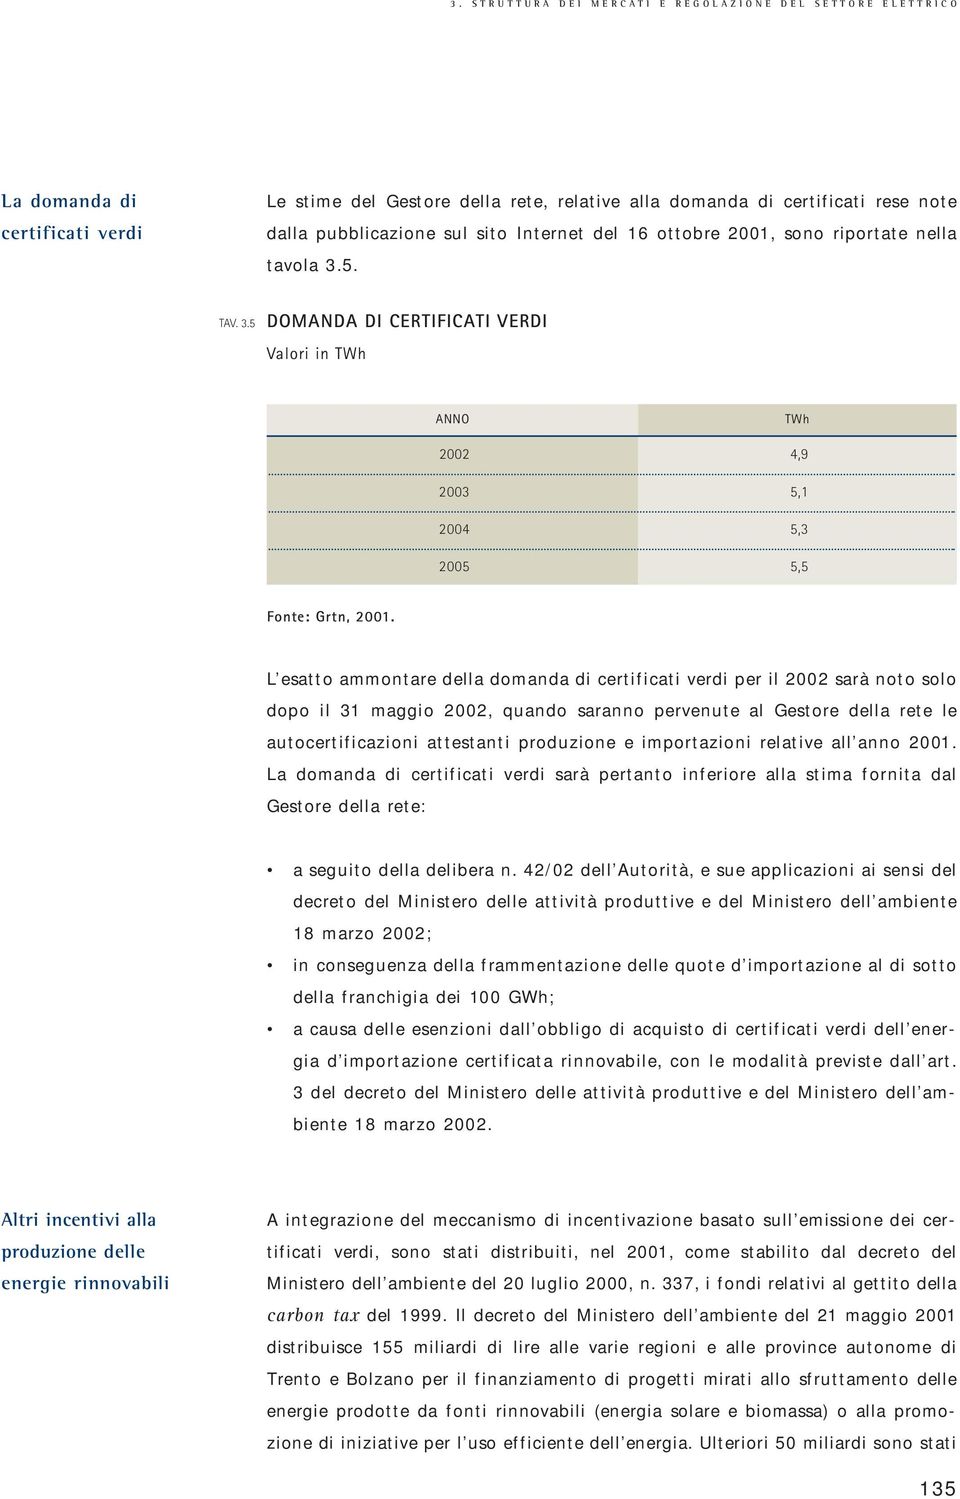 L esatto ammontare della domanda di certificati verdi per il 2002 sarà noto solo dopo il 31 maggio 2002, quando saranno pervenute al Gestore della rete le autocertificazioni attestanti produzione e